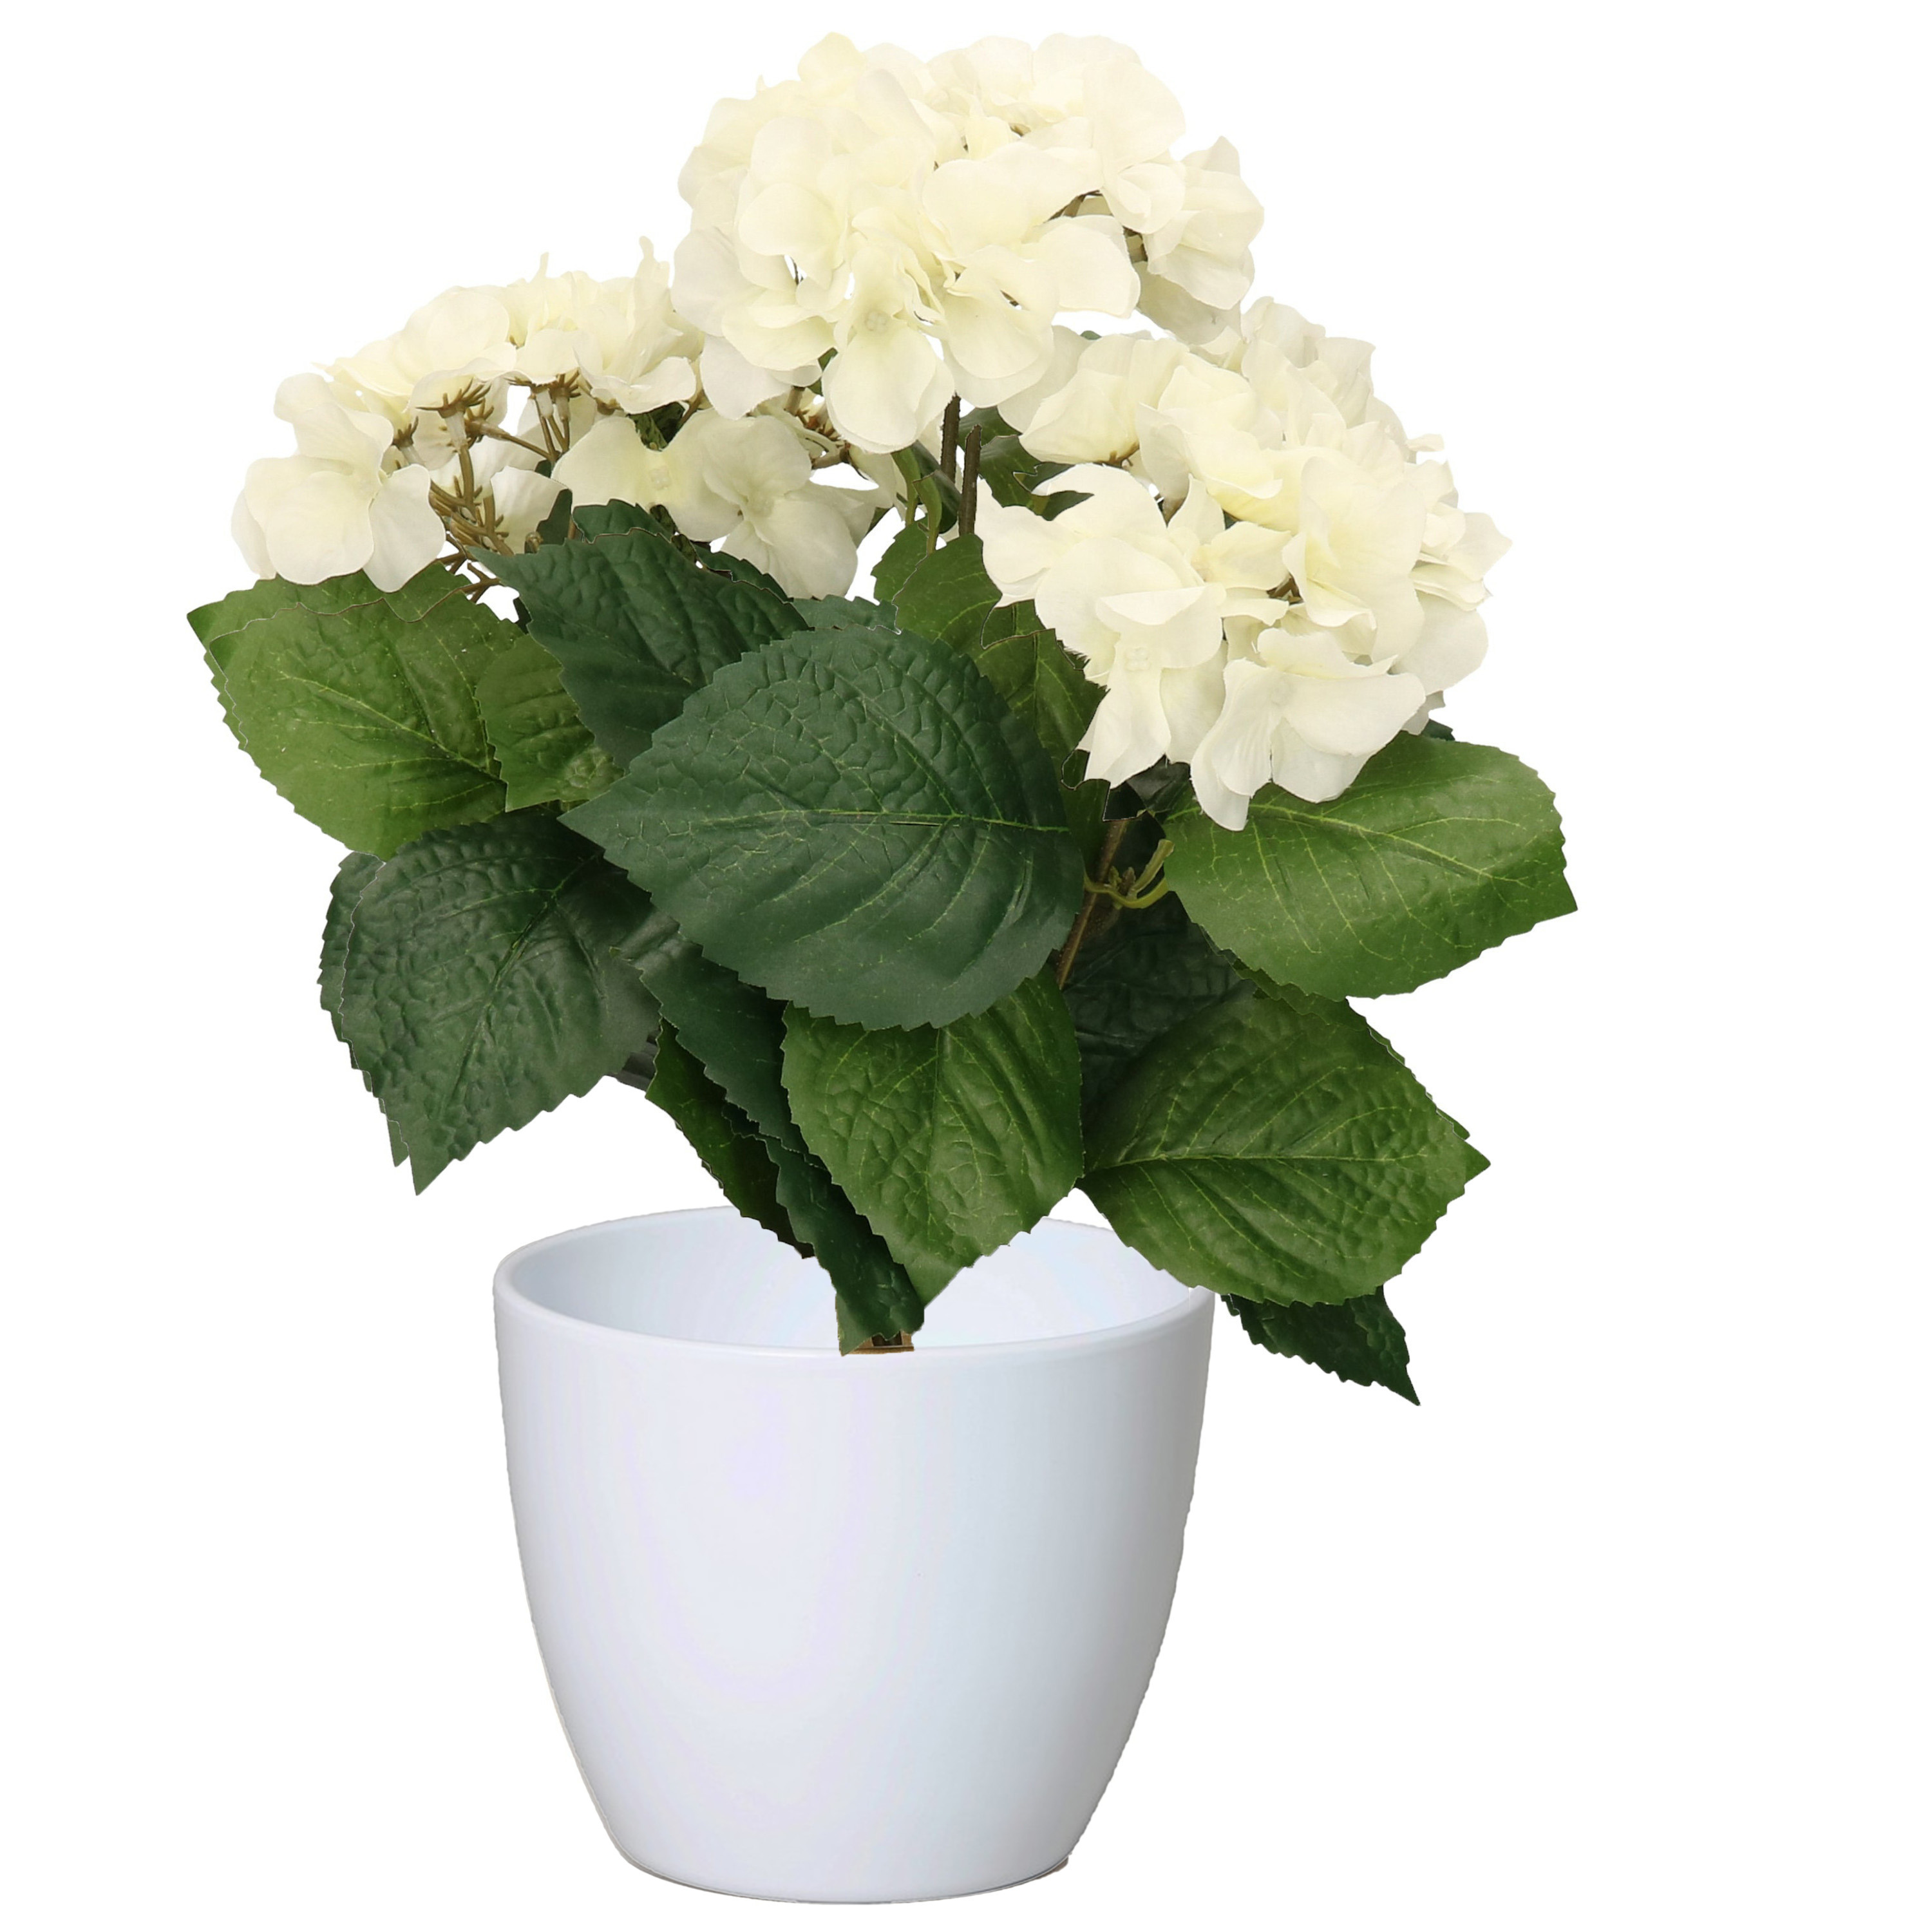 Hortensia kunstplant met bloemen wit in pot wit 40 cm hoog